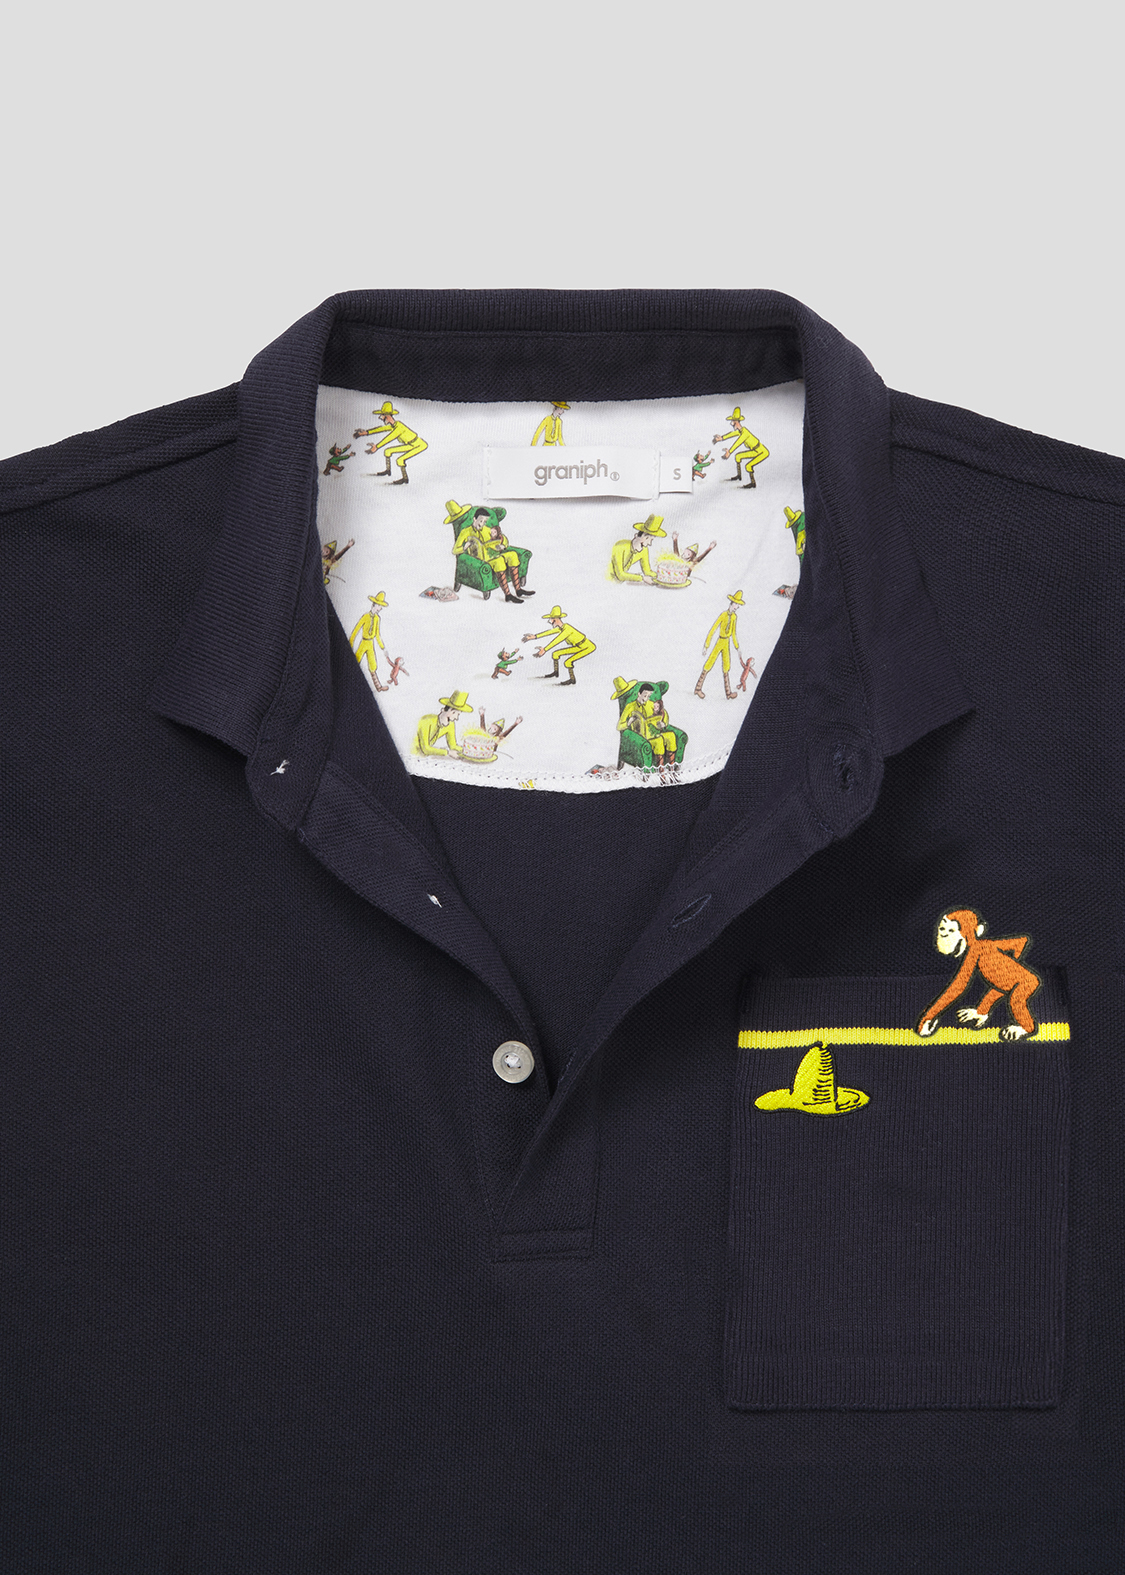 「おさるのジョージ」コラボレーション ポロシャツ「ジョージと黄色い帽子」デザインアップ